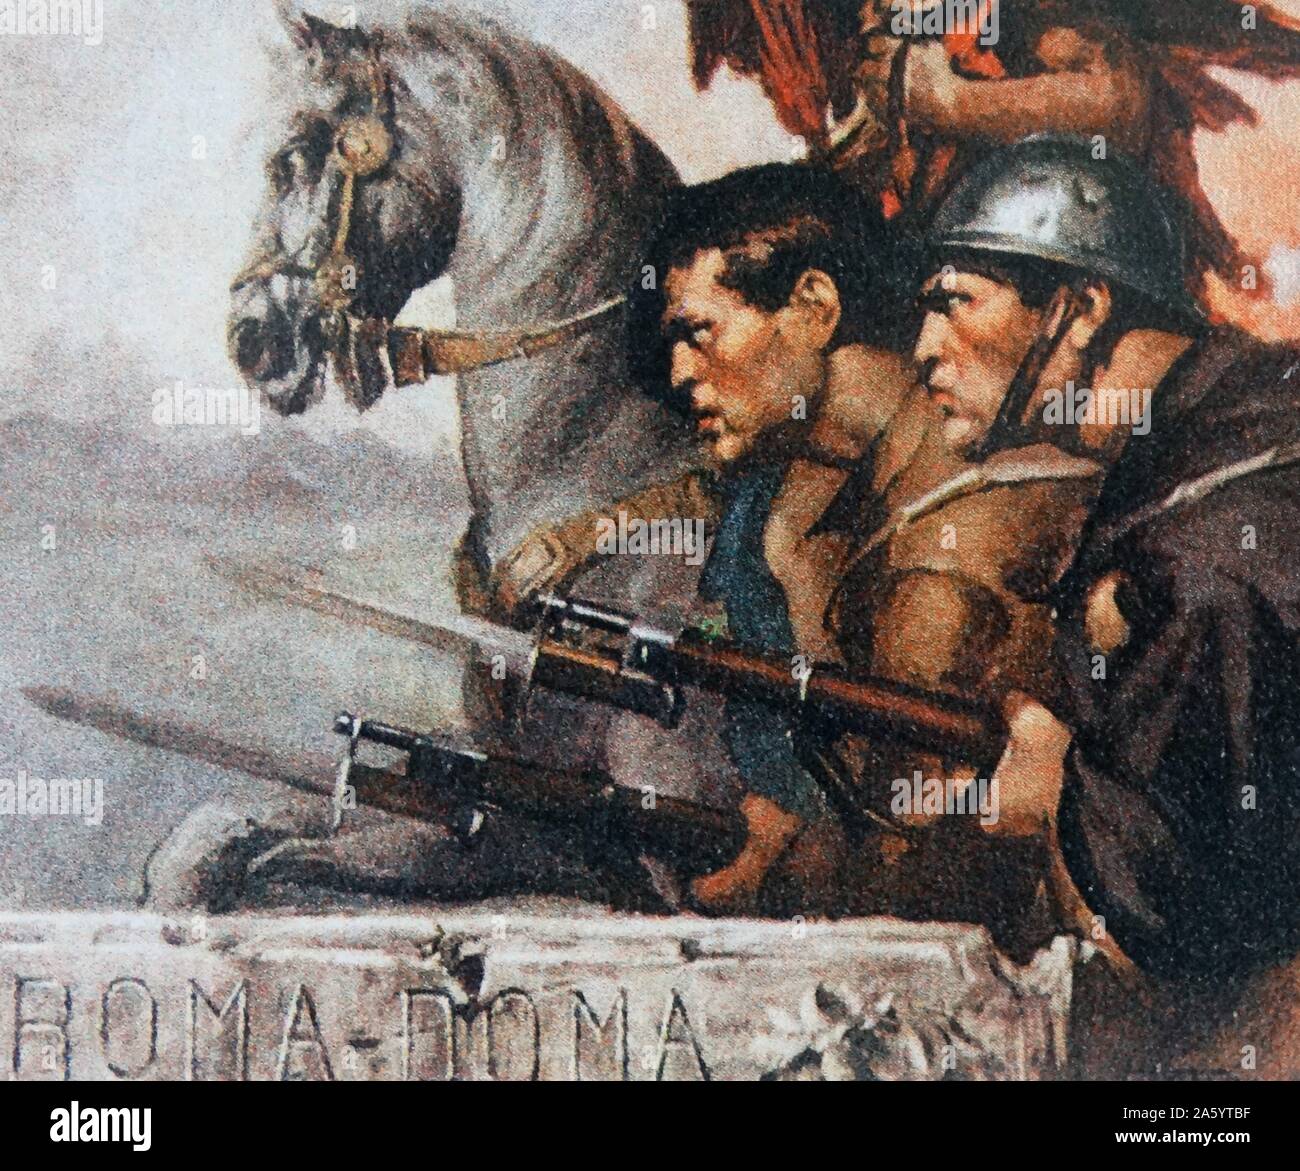 Legionario italiano lottando con i nazionalisti durante la Guerra Civile Spagnola Foto Stock